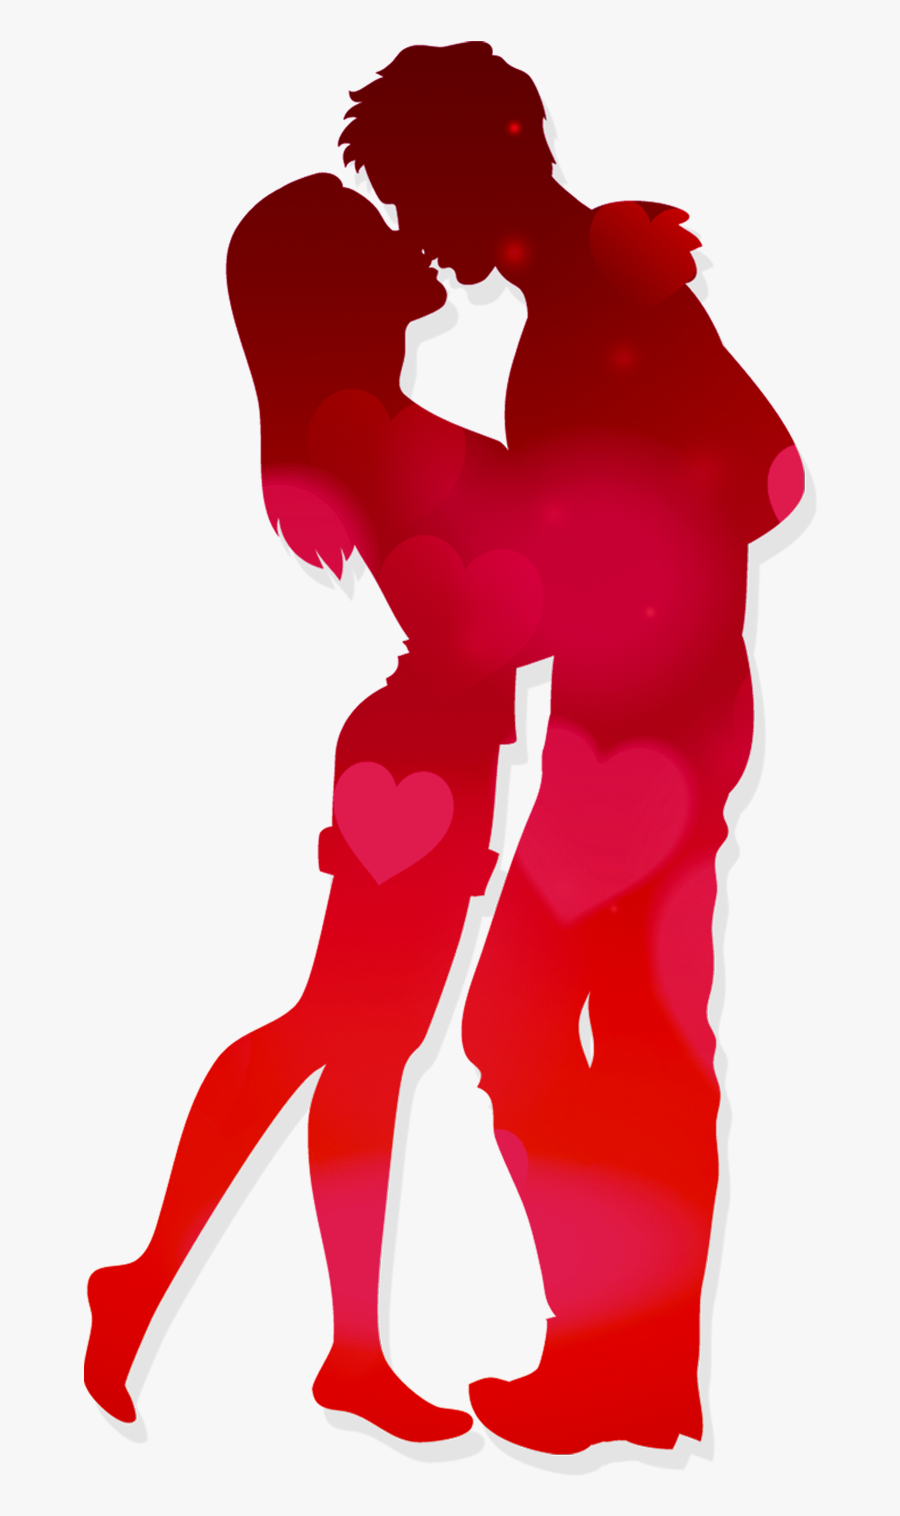 Kegel Exercise Couple Woman - Transparent Romantic Love Png, Transparent Clipart